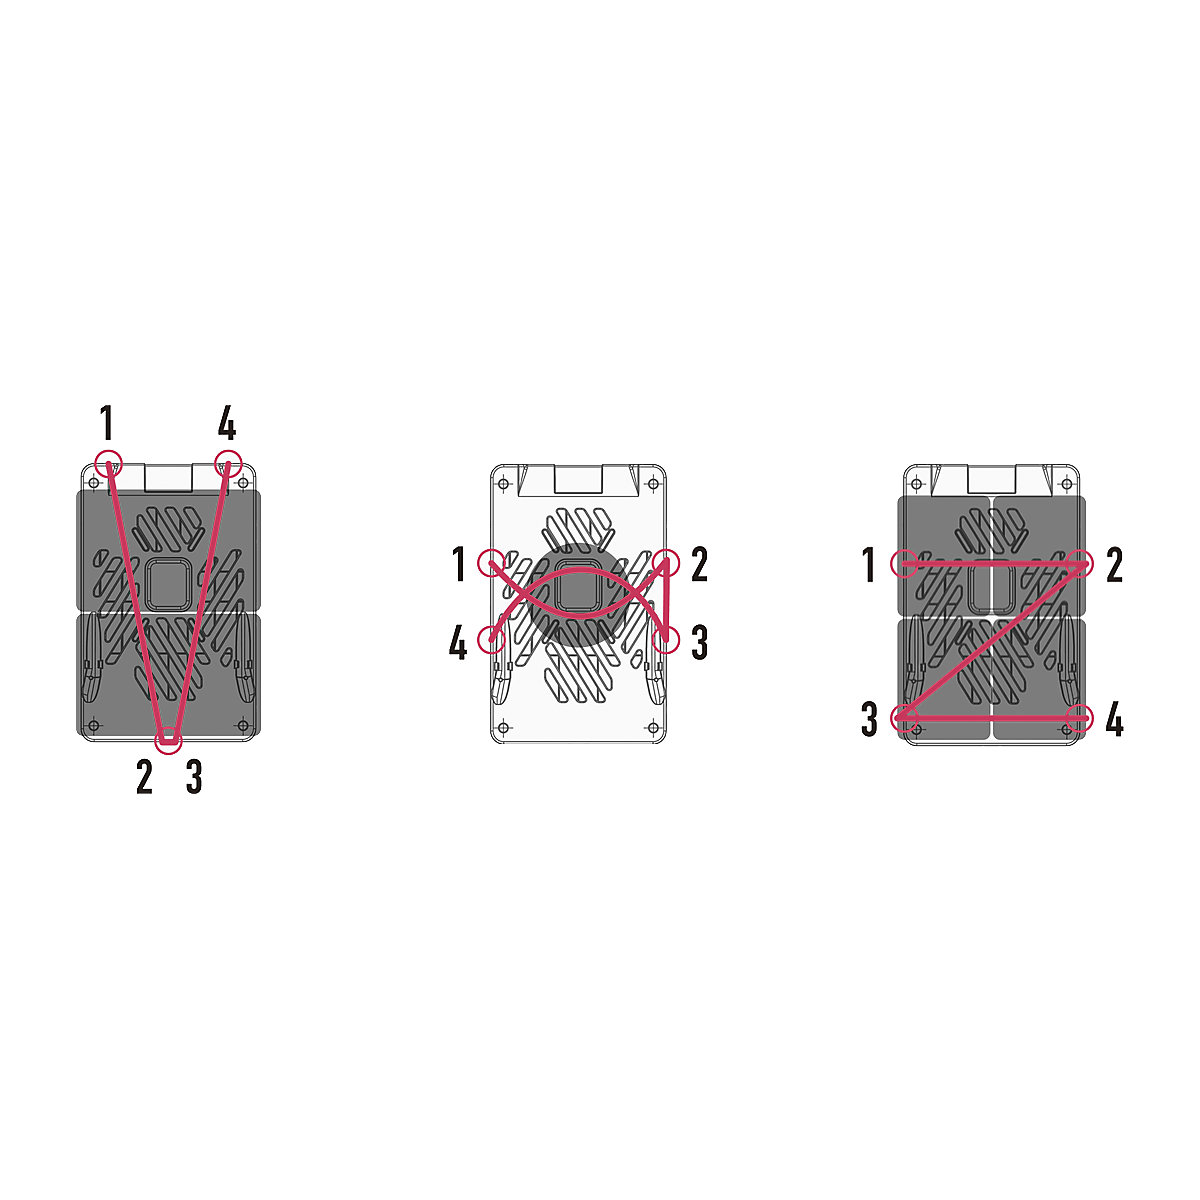 Plošinový vozík RuXXac Dandy (Zobrazenie produktu 3)-2